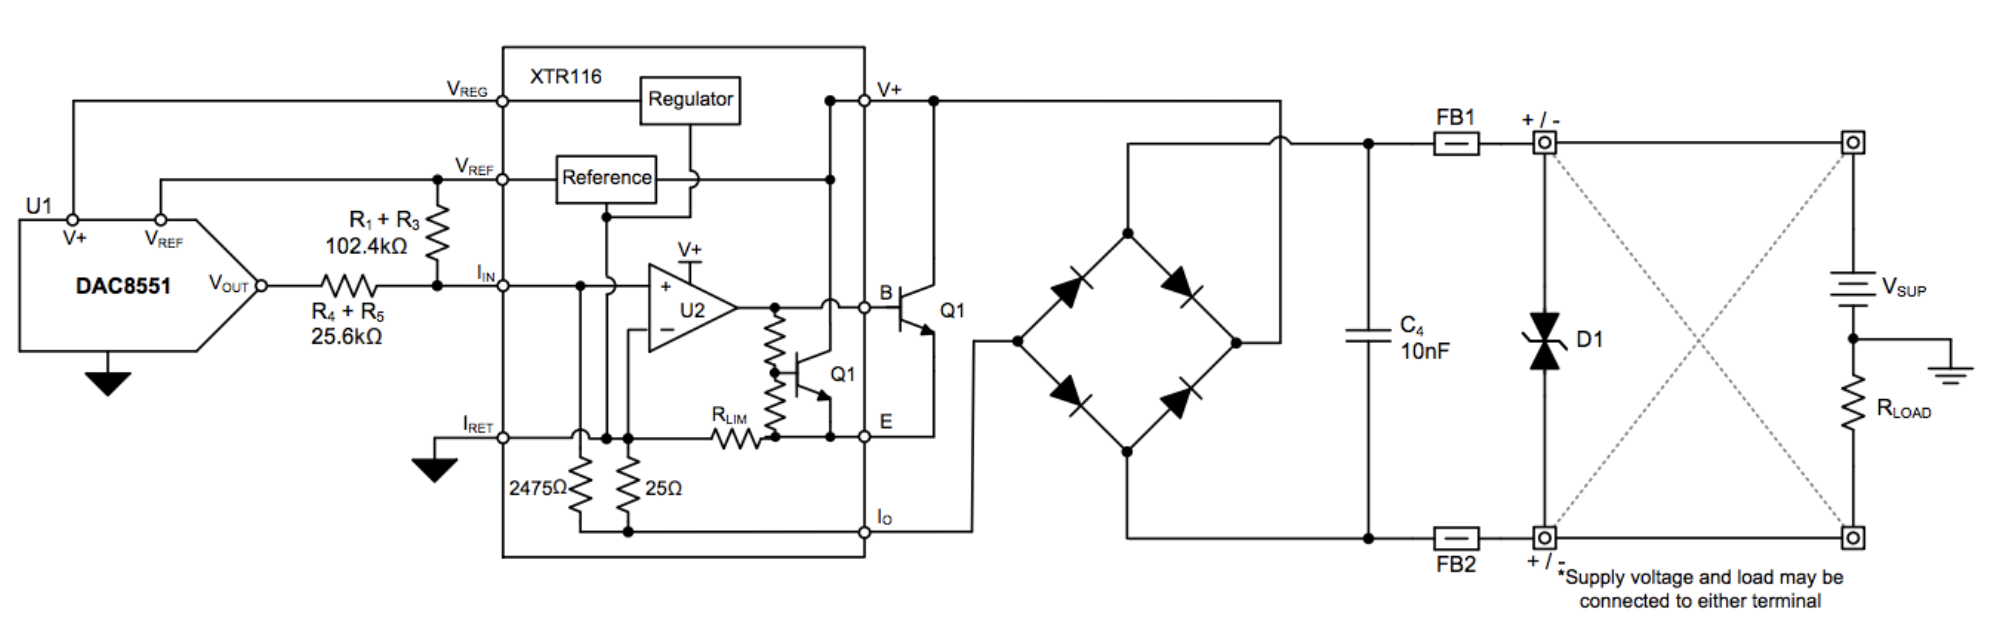 Sơ đồ mạch xử lý nhiễu tín hiệu analog 4-20mA 2 dây.